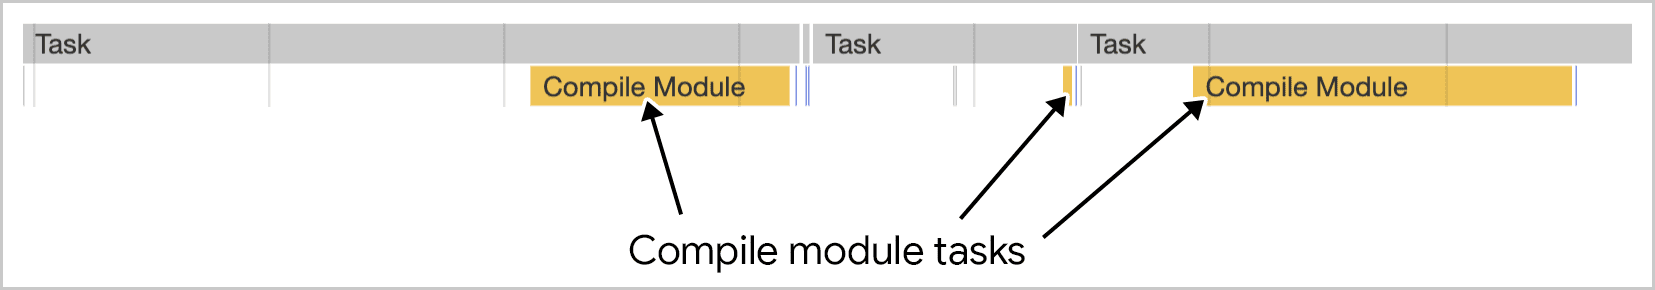 La compilación de módulos funciona en varias tareas, tal como se visualiza en las Herramientas para desarrolladores de Chrome.